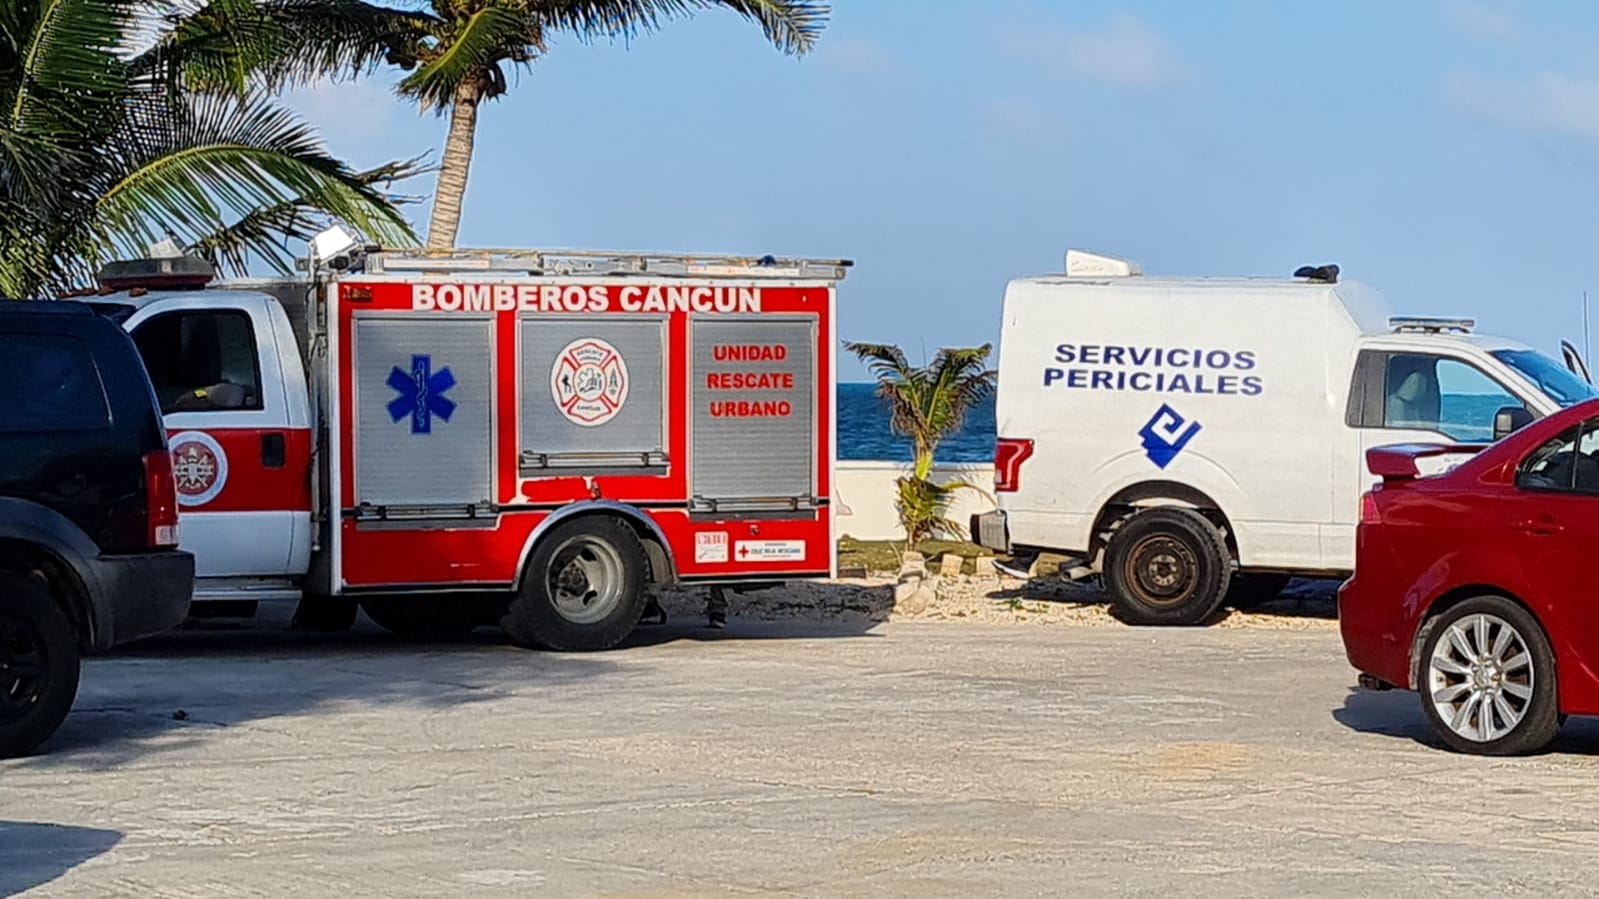 Encuentran cuerpo flotando en playa del niño en Cancún